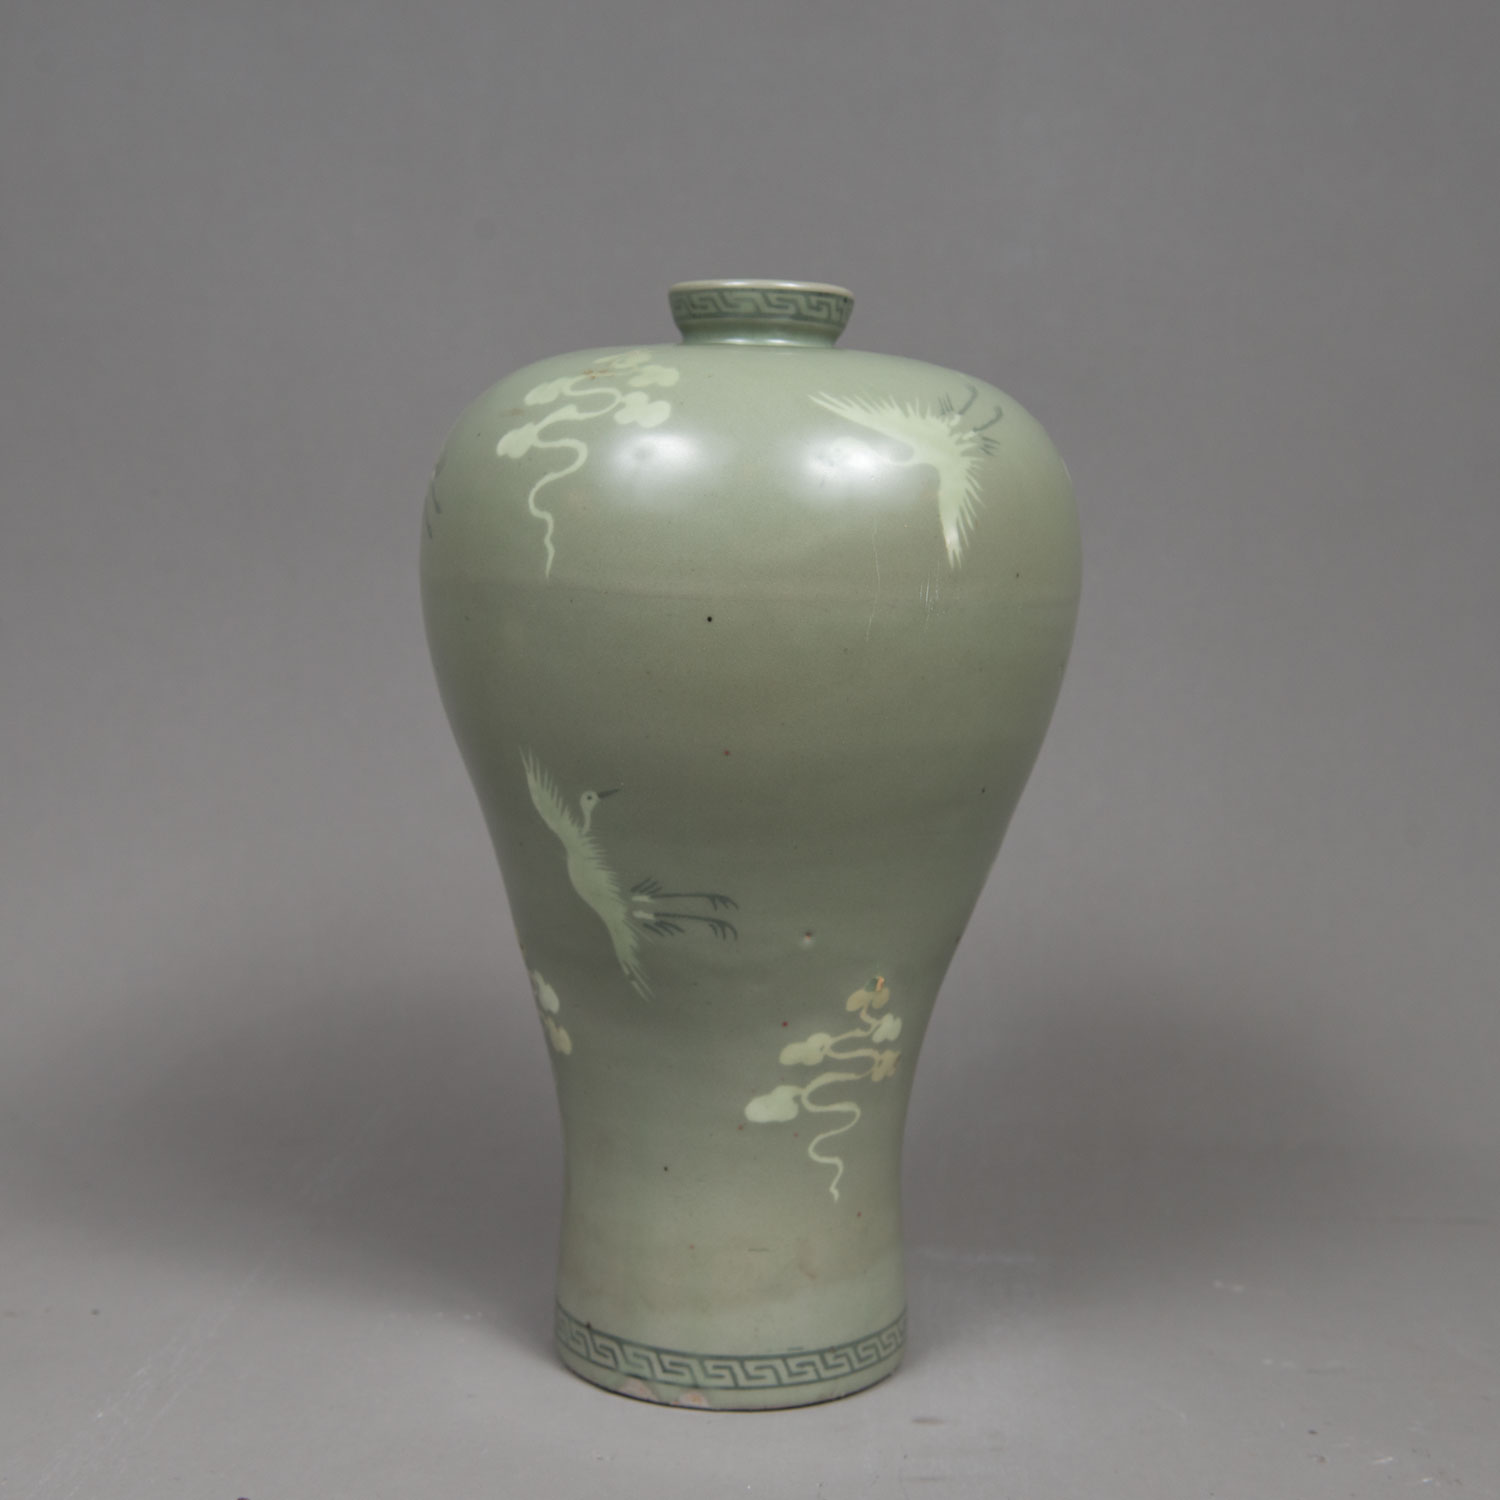 Korean Ceramic Vase - Image 2 of 3